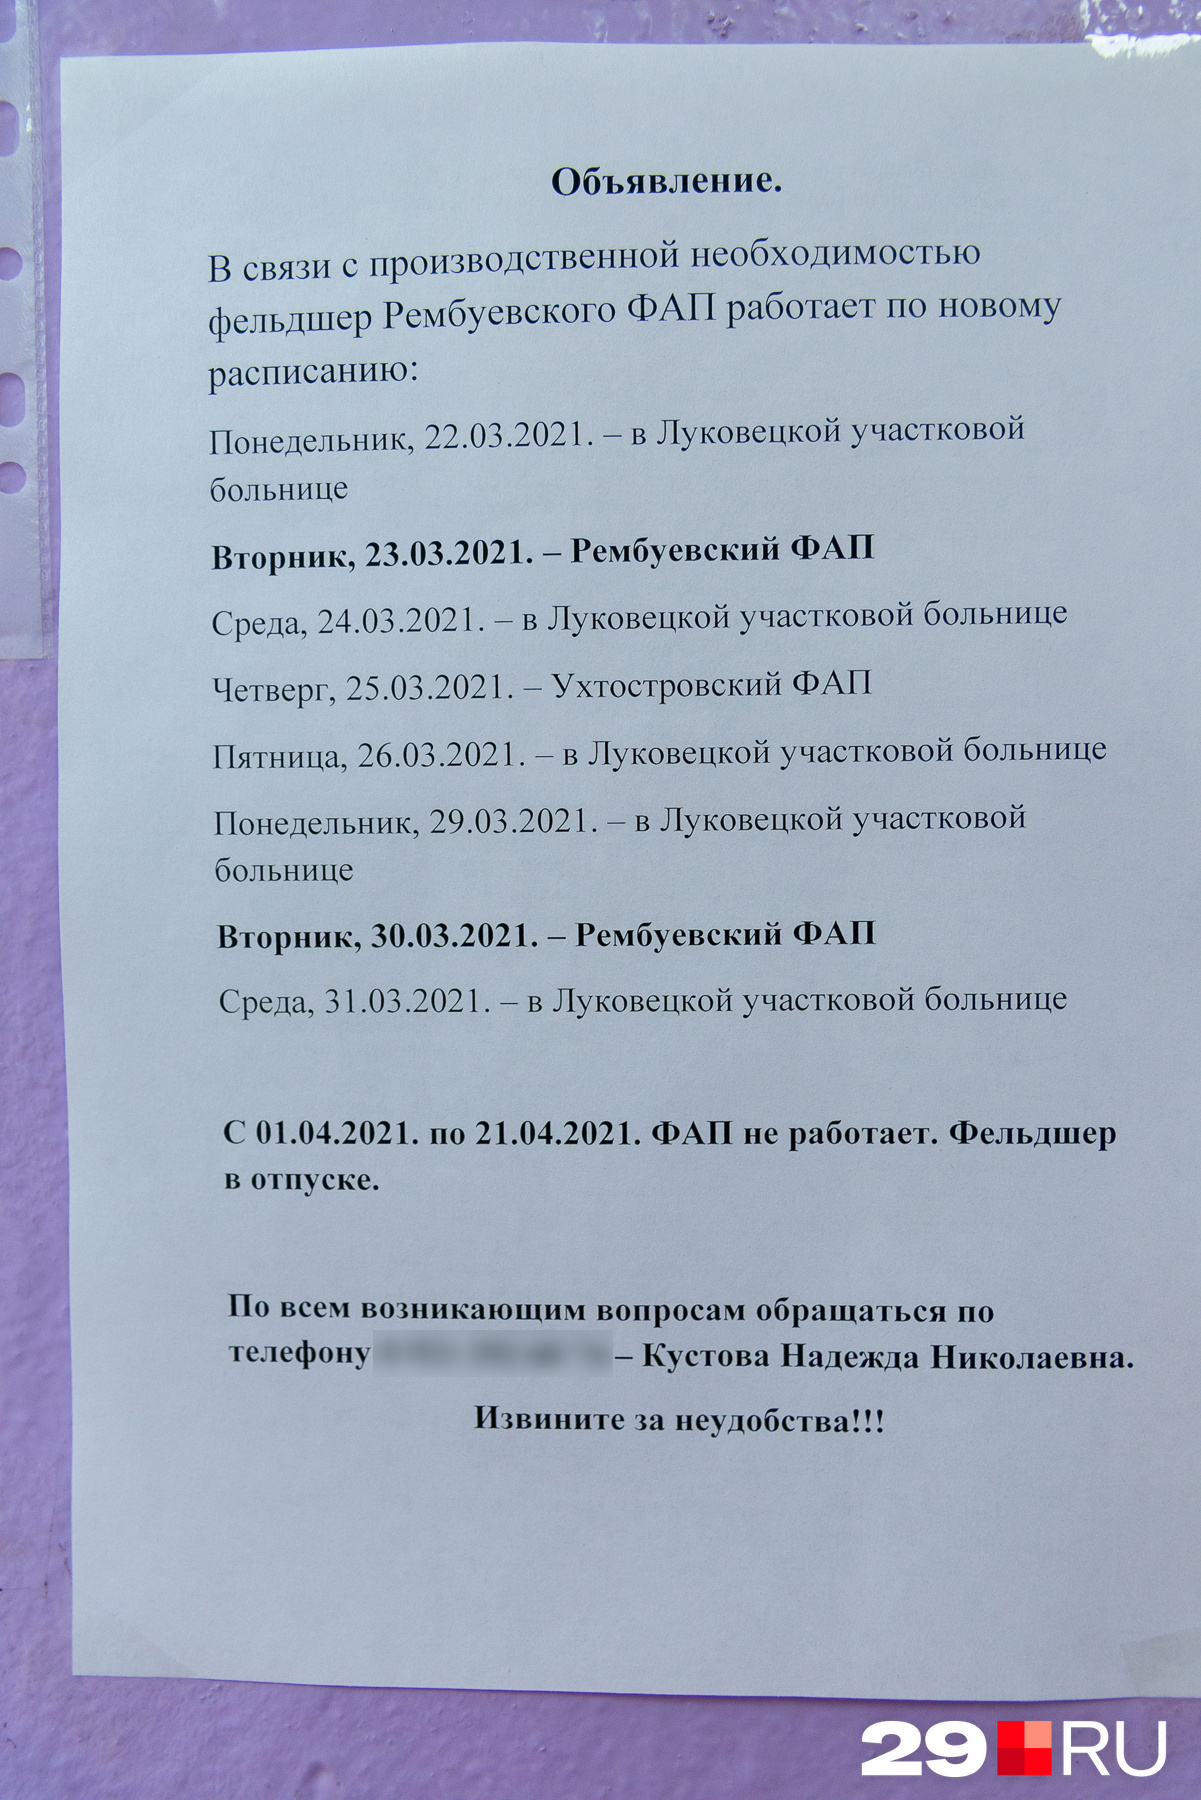 Такой график был у Надежды Николаевны на конец марта и апрель